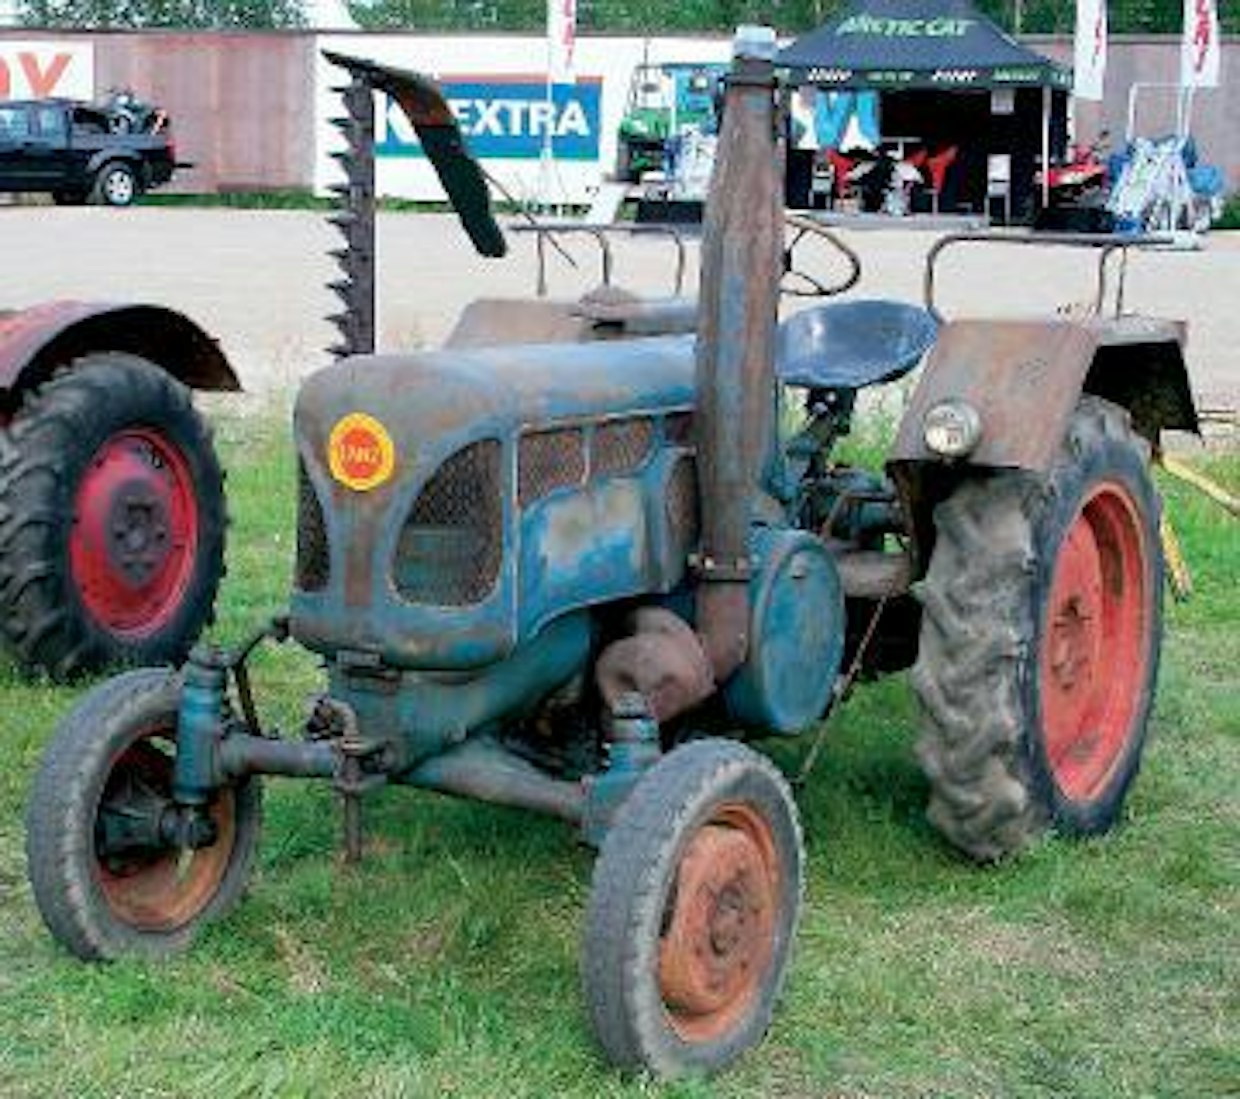 Lanz Bulldog 2416 kuuluu merkin viimeiseen, vuonna 1955 esiteltyyn mallistoon. Uudistuksiin kuuluivat mm. hehkutulpan ja sähköstartin avulla tapahtuva käynnistys, nostolaite ja muotoillut konepellit. 24 hv:n Lanz on 1-sylinterinen, iskutilavuus 2600 cc, traktori painaa varusteineen n. 1500 kg. Kuopio